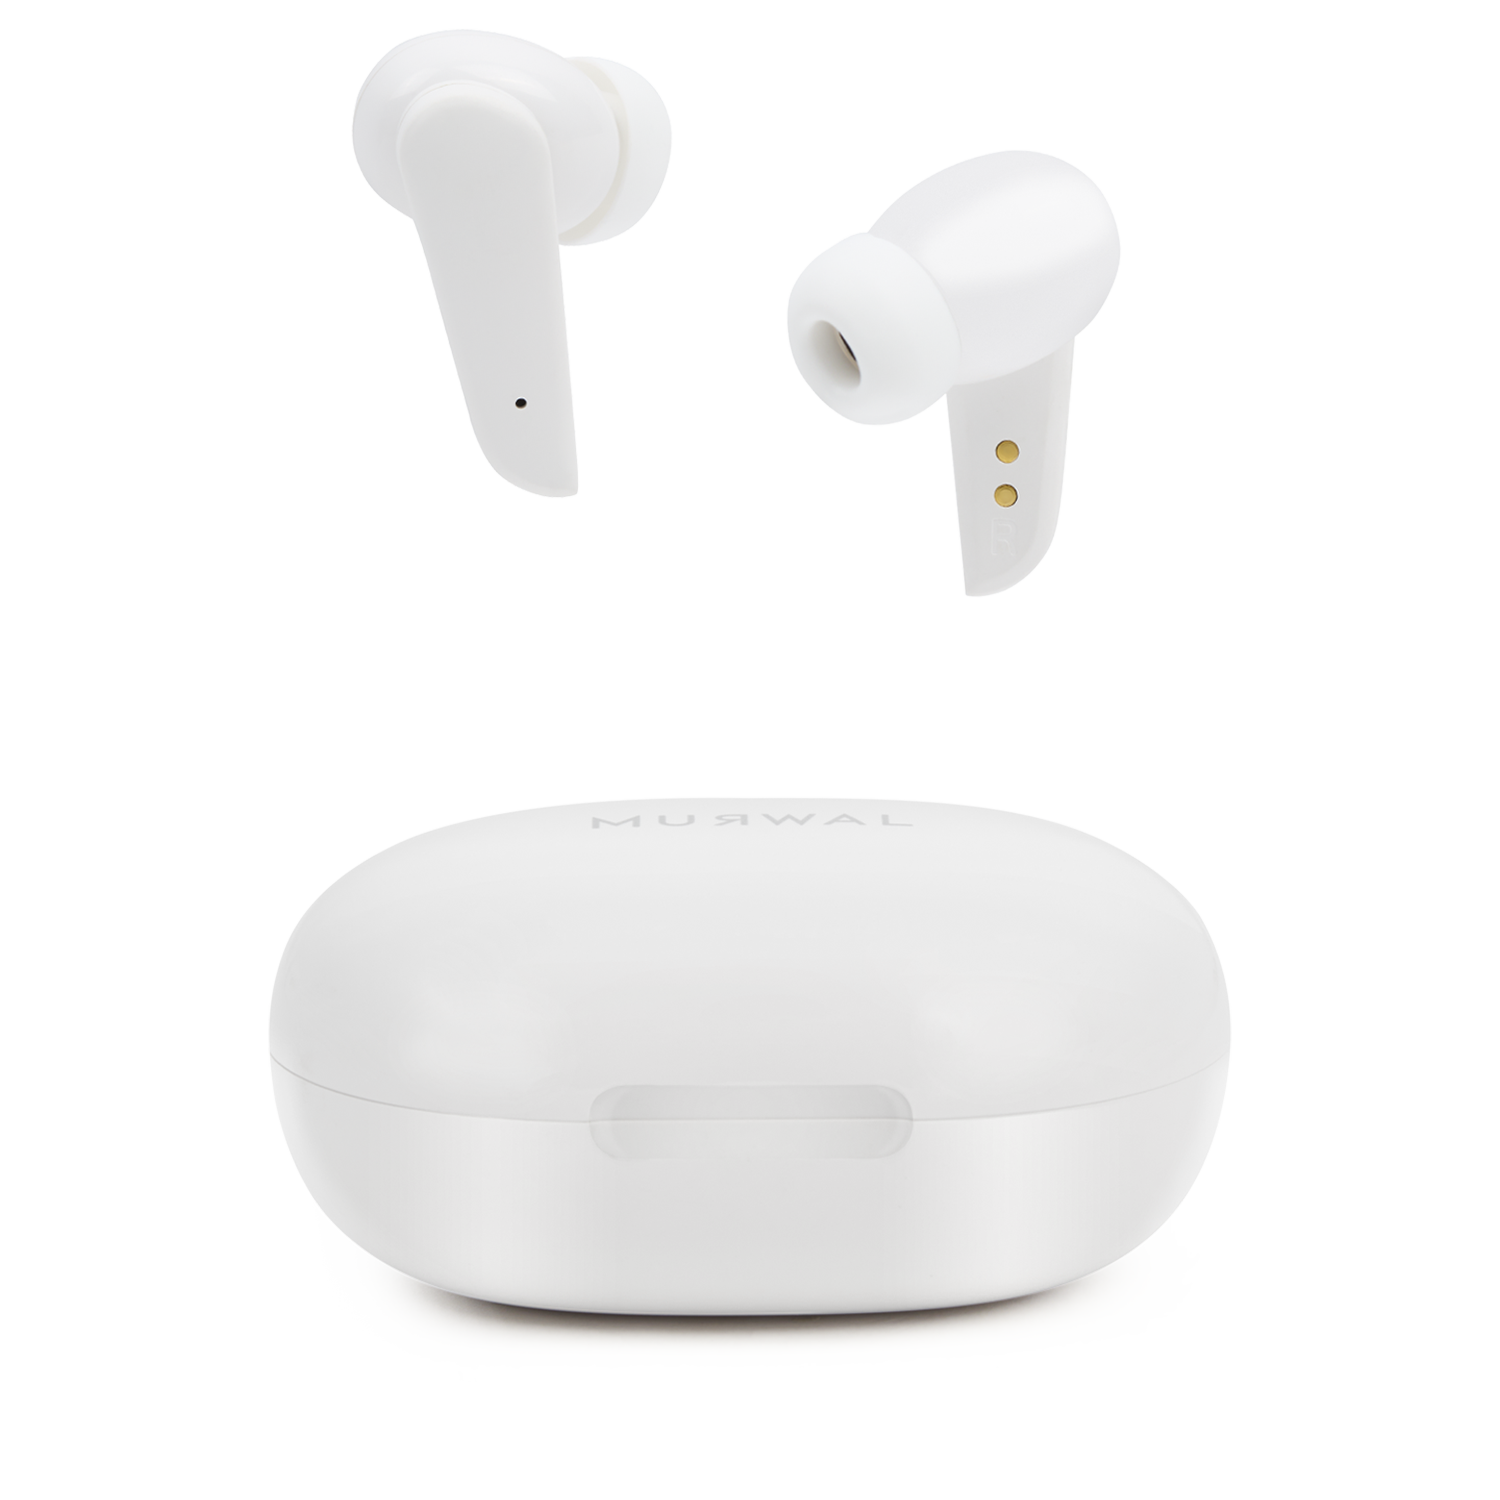 murwal Auriculares Mint Bluetooth inalámbricos con microfono 16Horas de  reproducción, IPX5 Impermeable, reducción de Ruido Ideales para el día a  día Ajuste Oreja (Negro) : : Informática